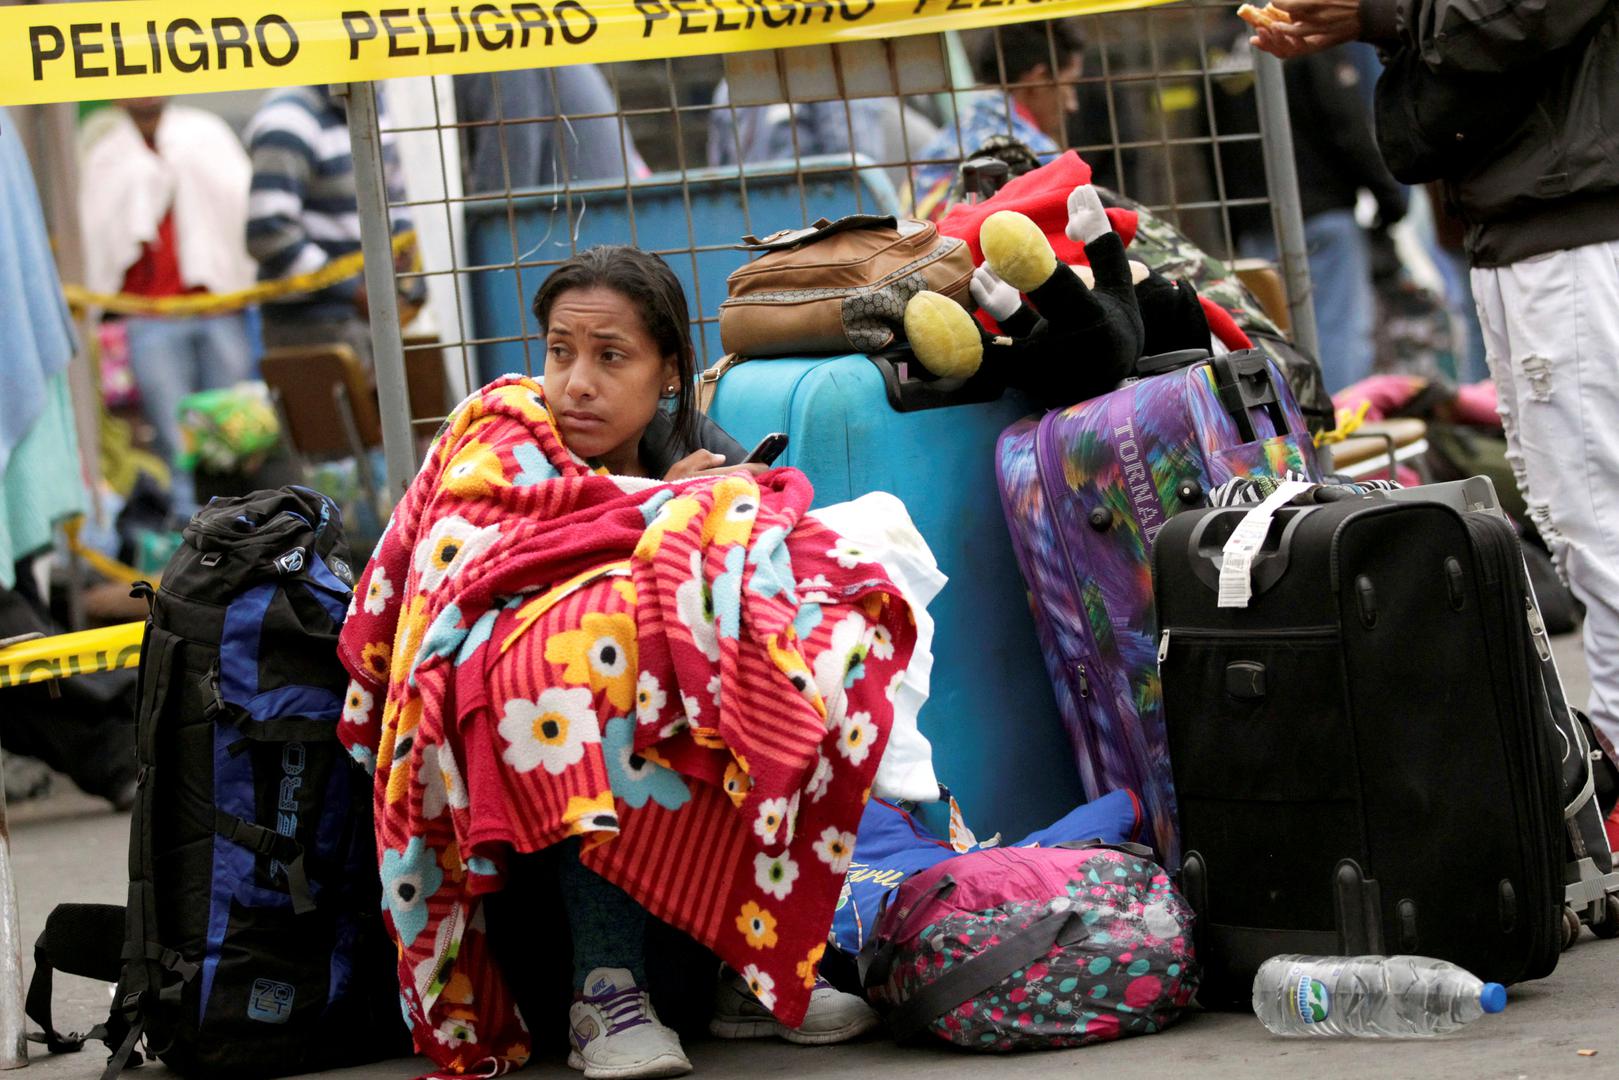 Venezuela ima 31,5 milijuna stanovnika, a stotine tisuća već su pobjegle u Brazil, Peru, Ekvador...